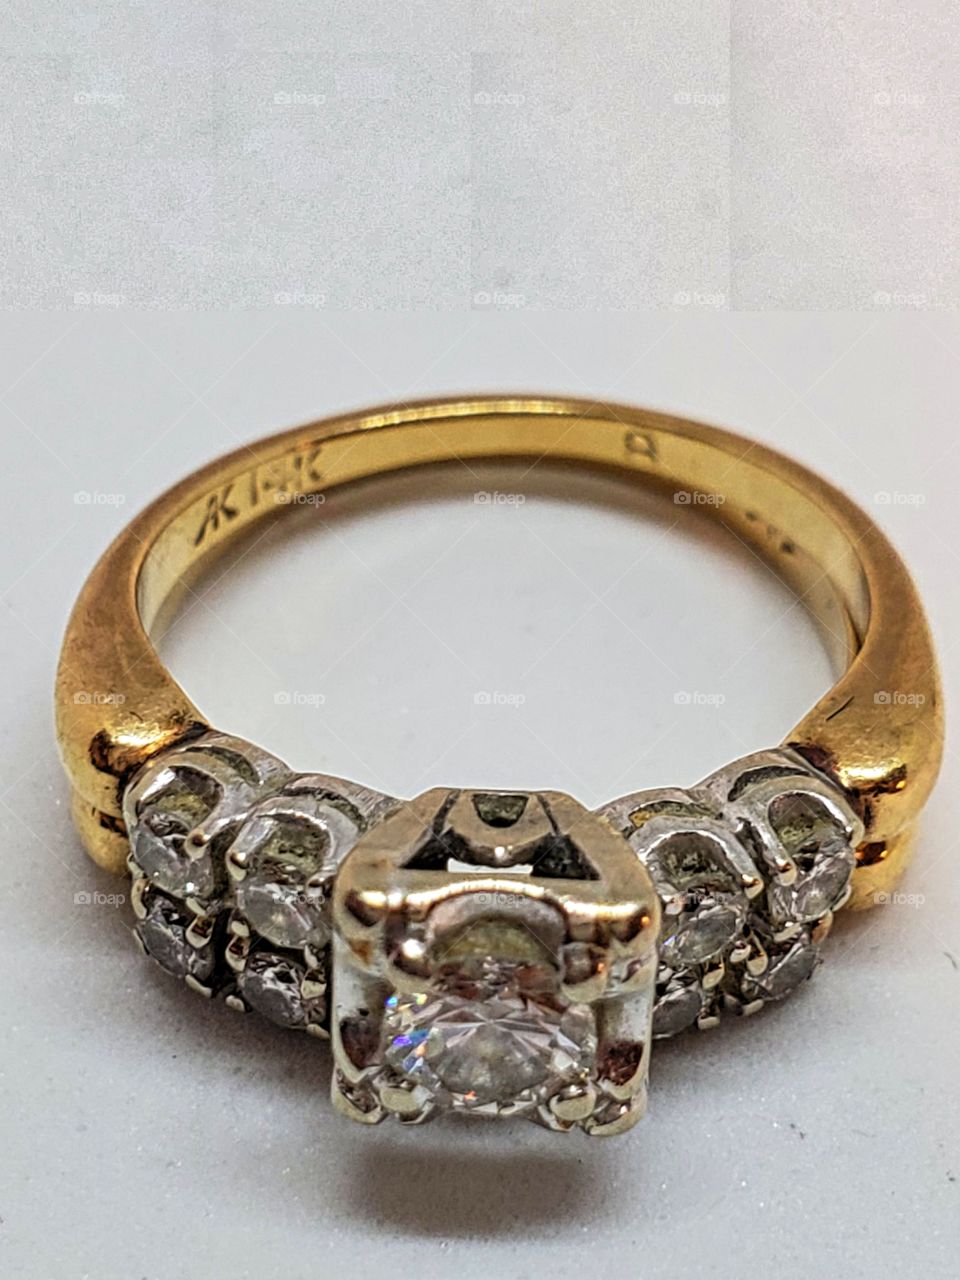 Vintage wedding ring set!